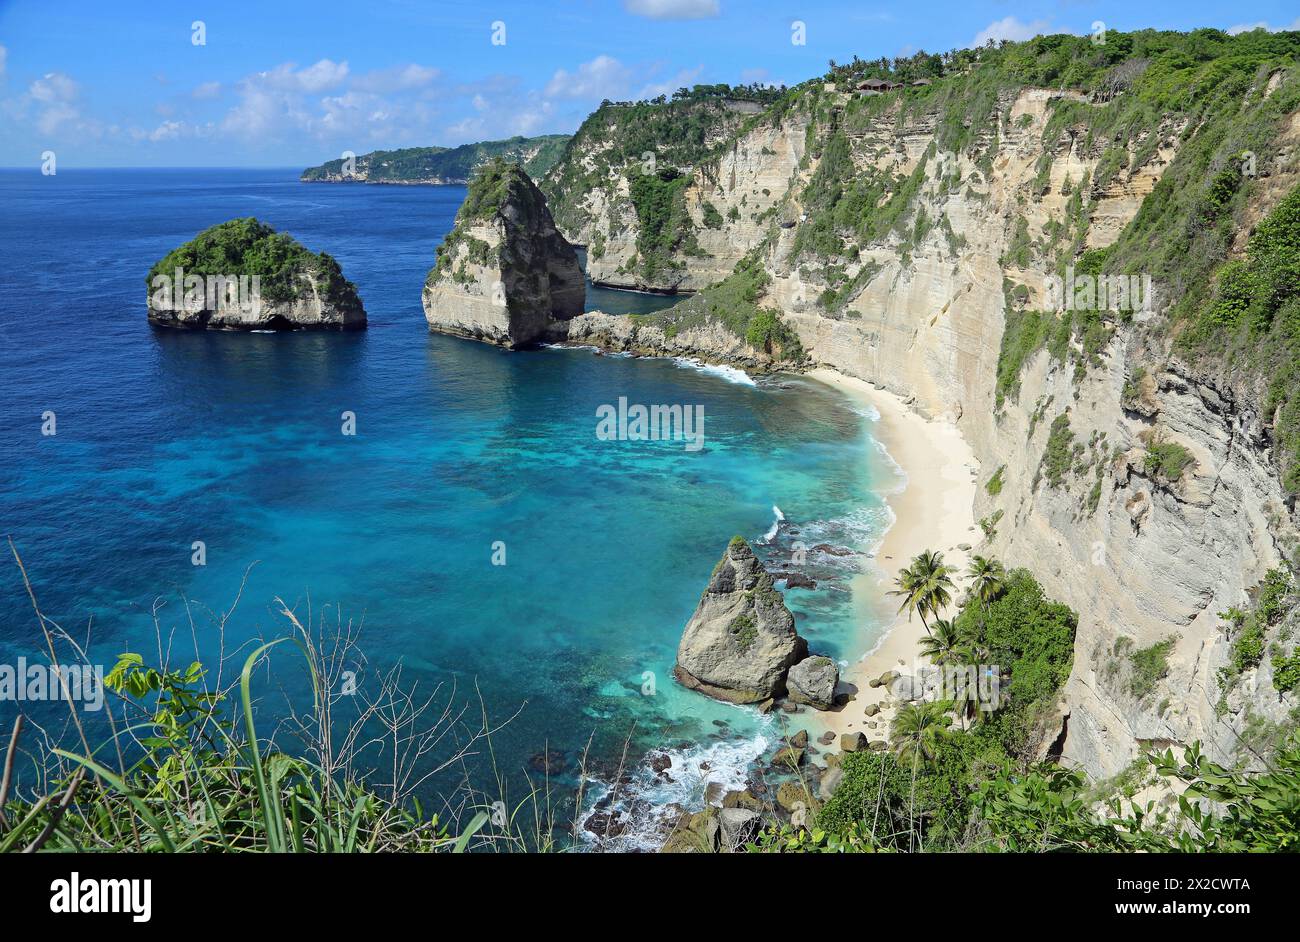 View at Diamond Beach - Nusa Penida, Indonesia Stock Photo